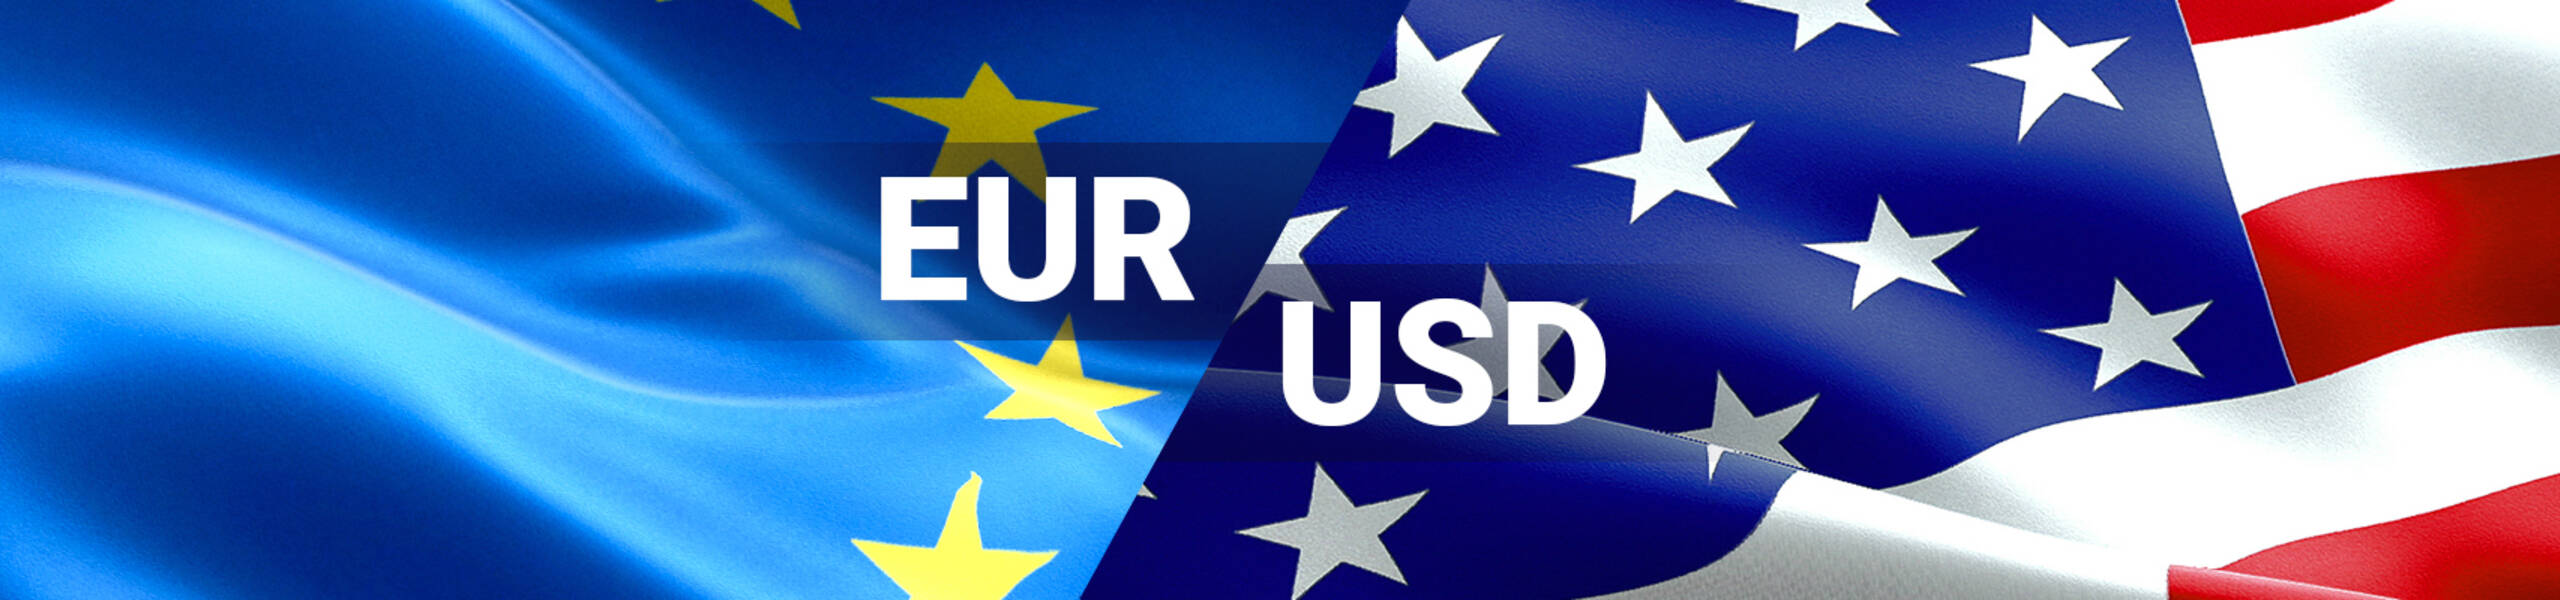 EUR/USD buscando la corrección tras fuerte caída